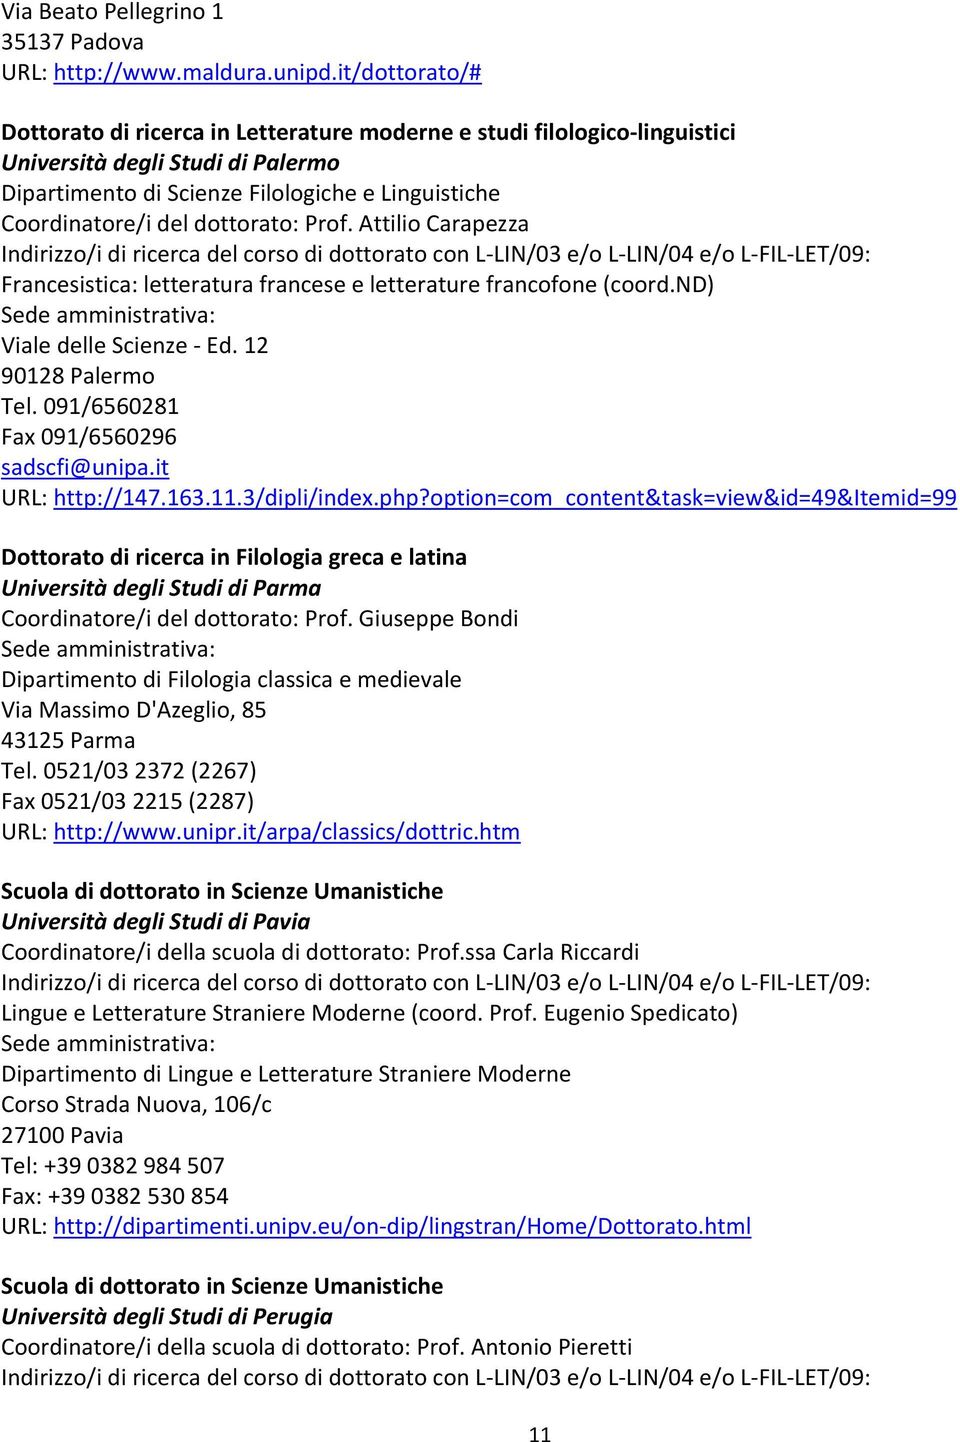 dottorato: Prof. Attilio Carapezza Francesistica: letteratura francese e letterature francofone (coord.nd) Viale delle Scienze - Ed. 12 90128 Palermo Tel. 091/6560281 Fax 091/6560296 sadscfi@unipa.